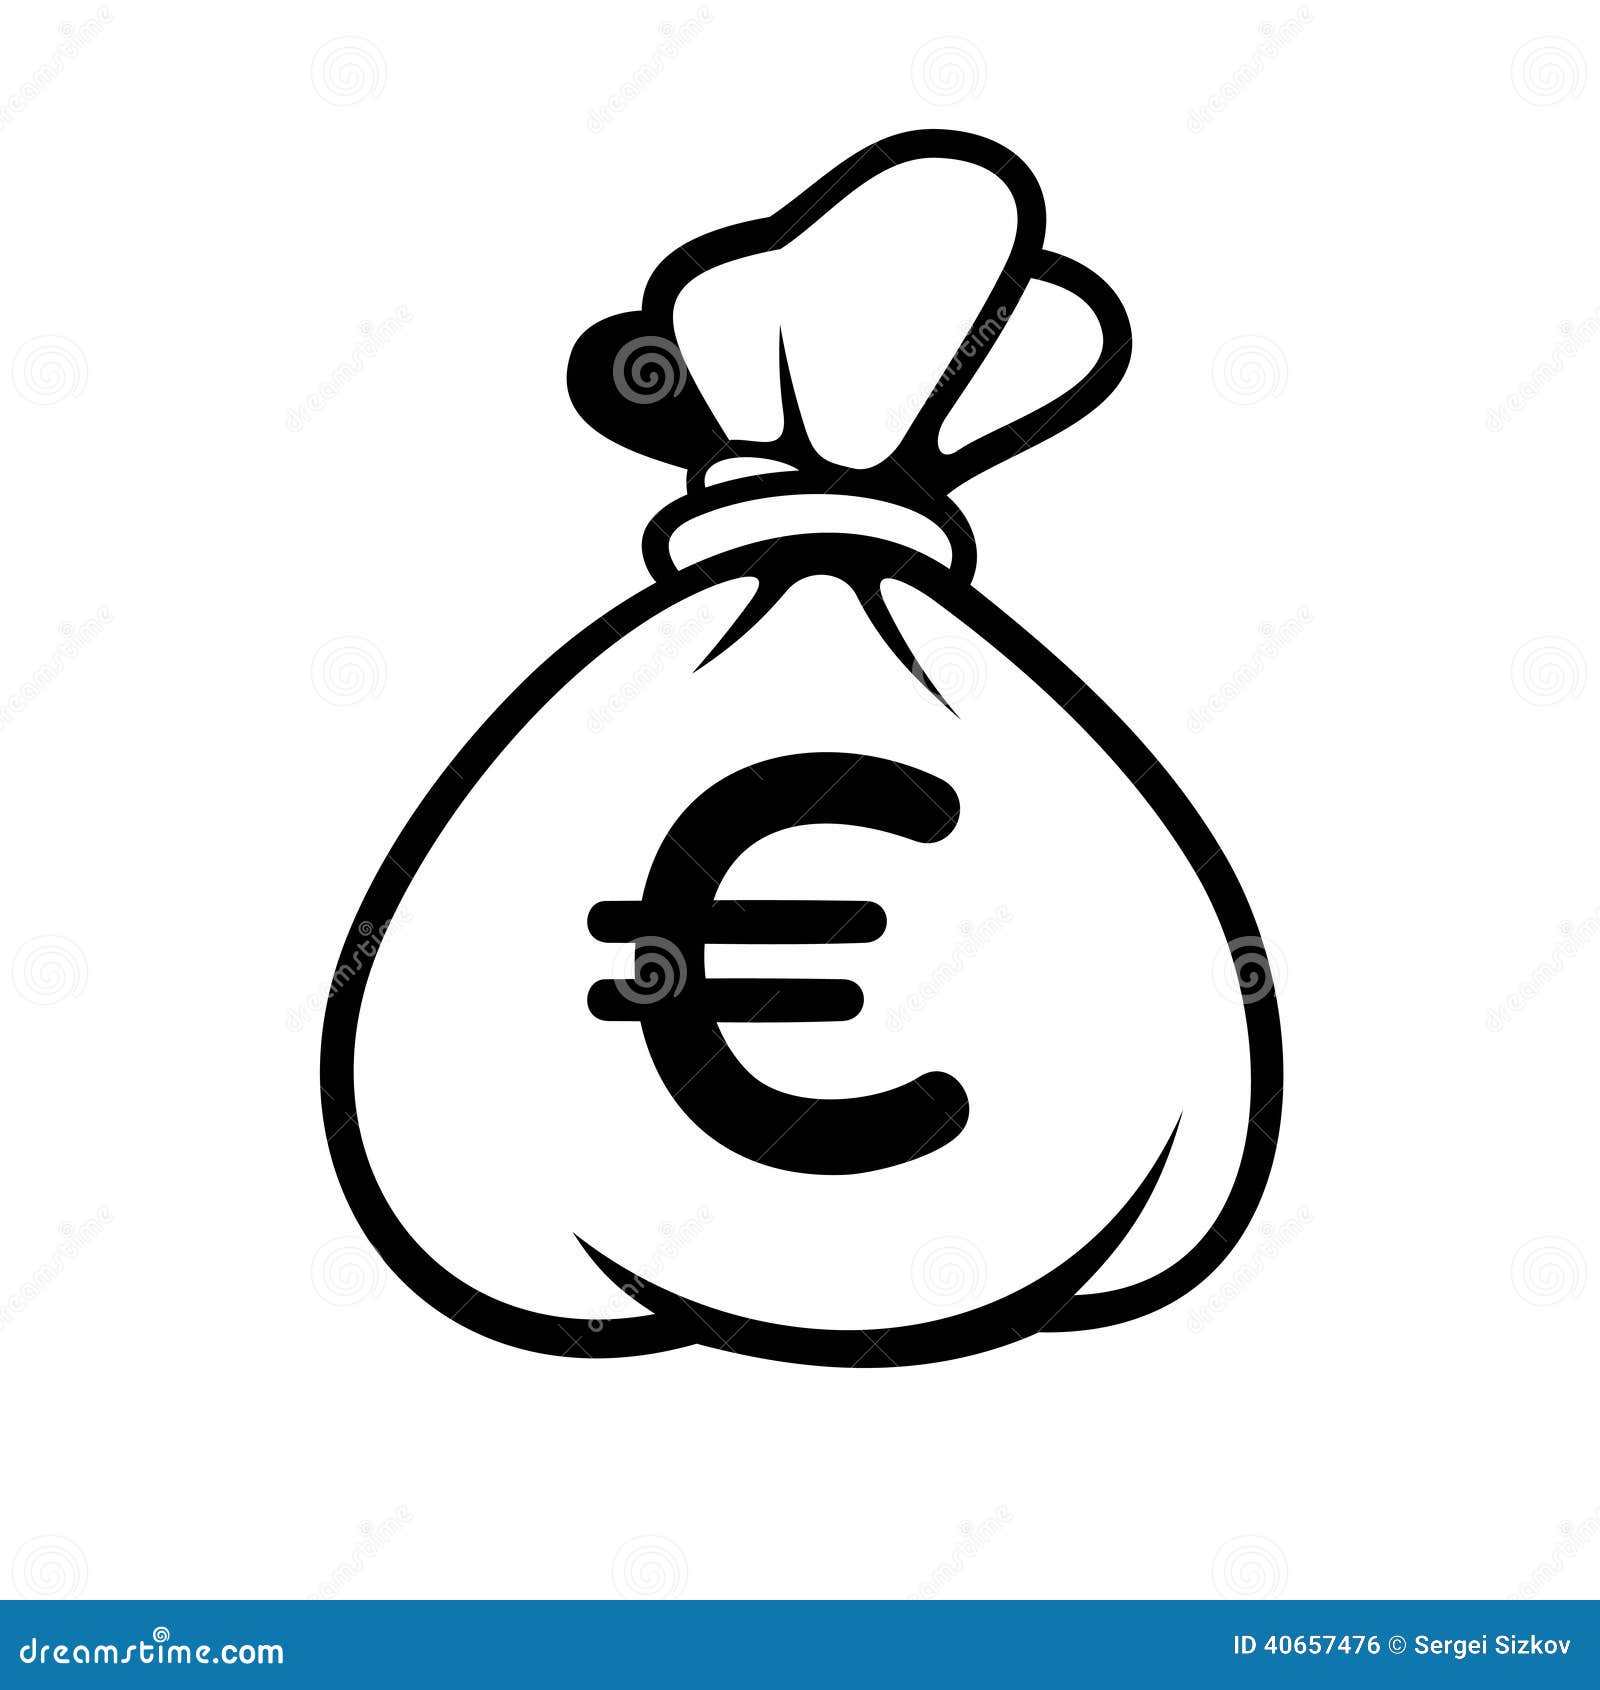 euro money icon with bag. .